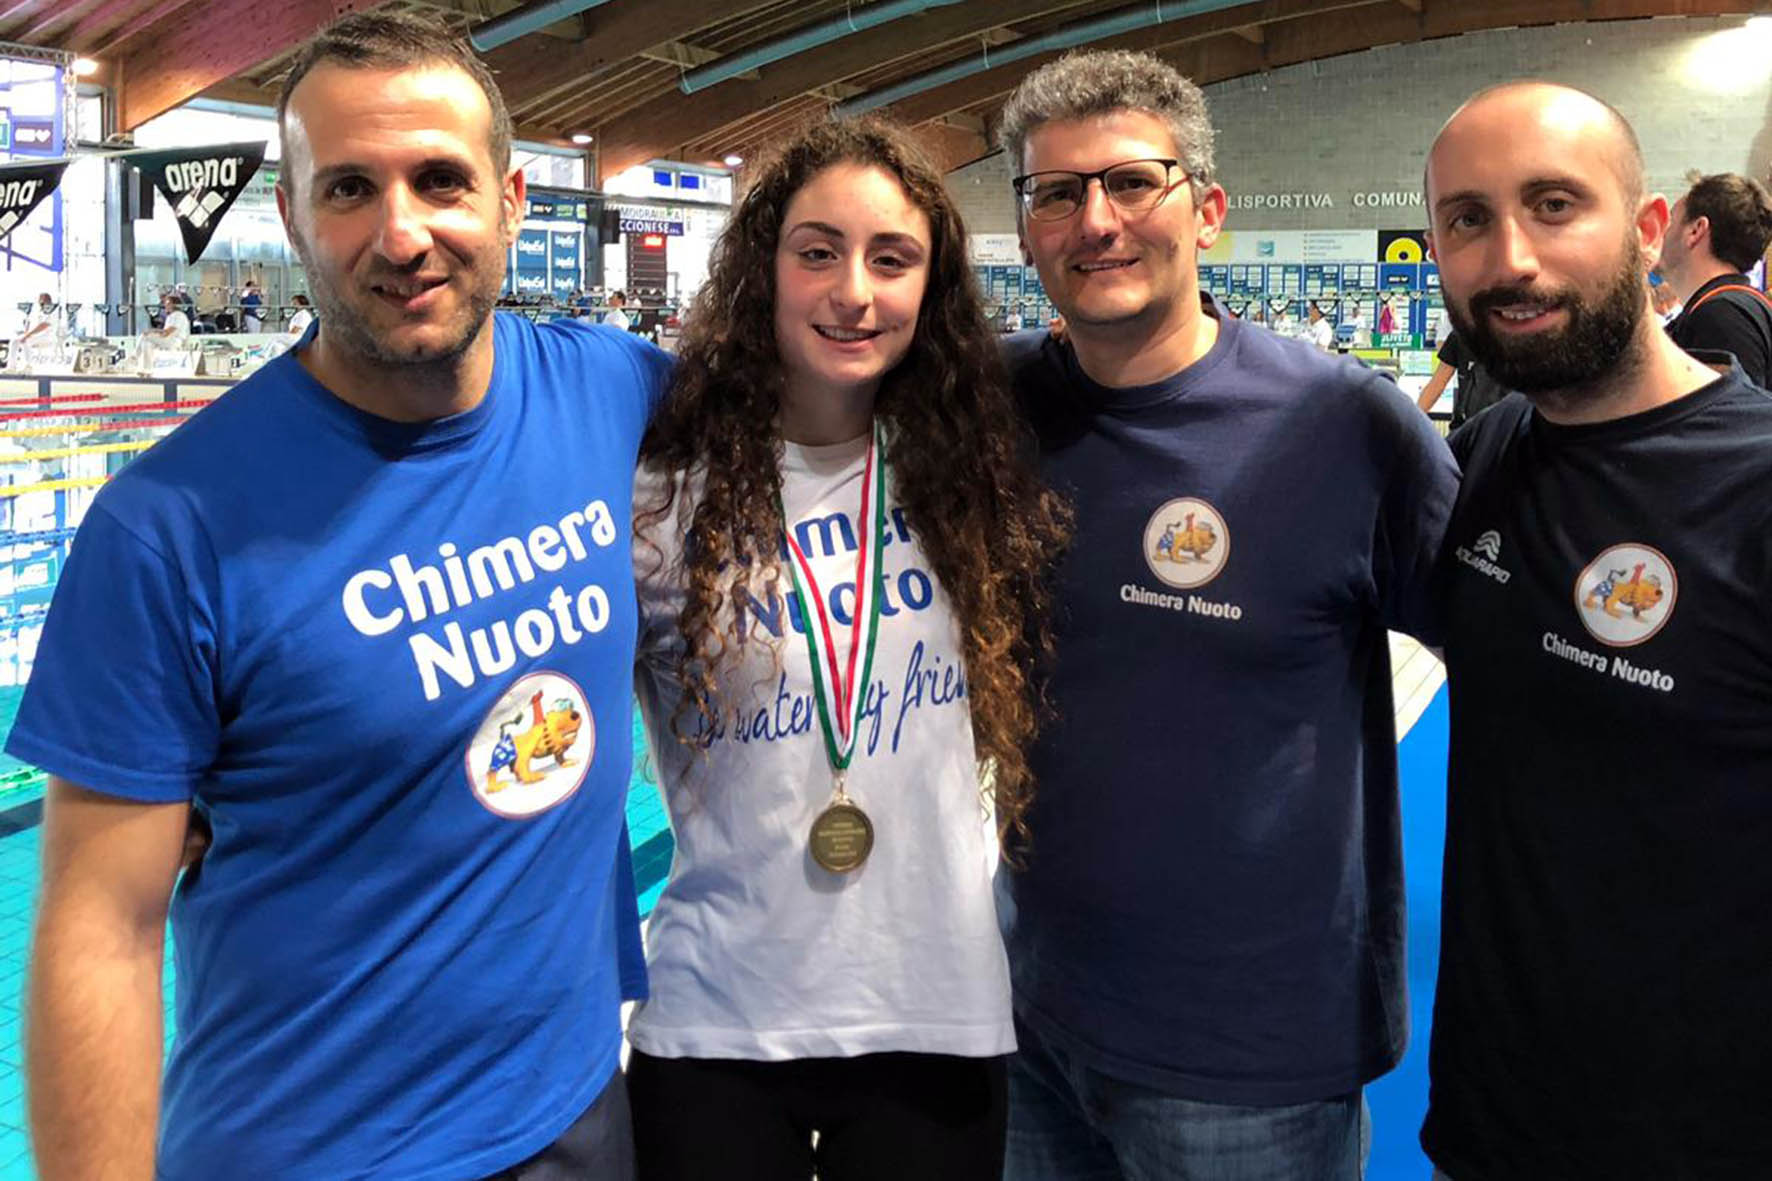 Eleonora Camisa va a Malta con la rappresentativa toscana di nuoto